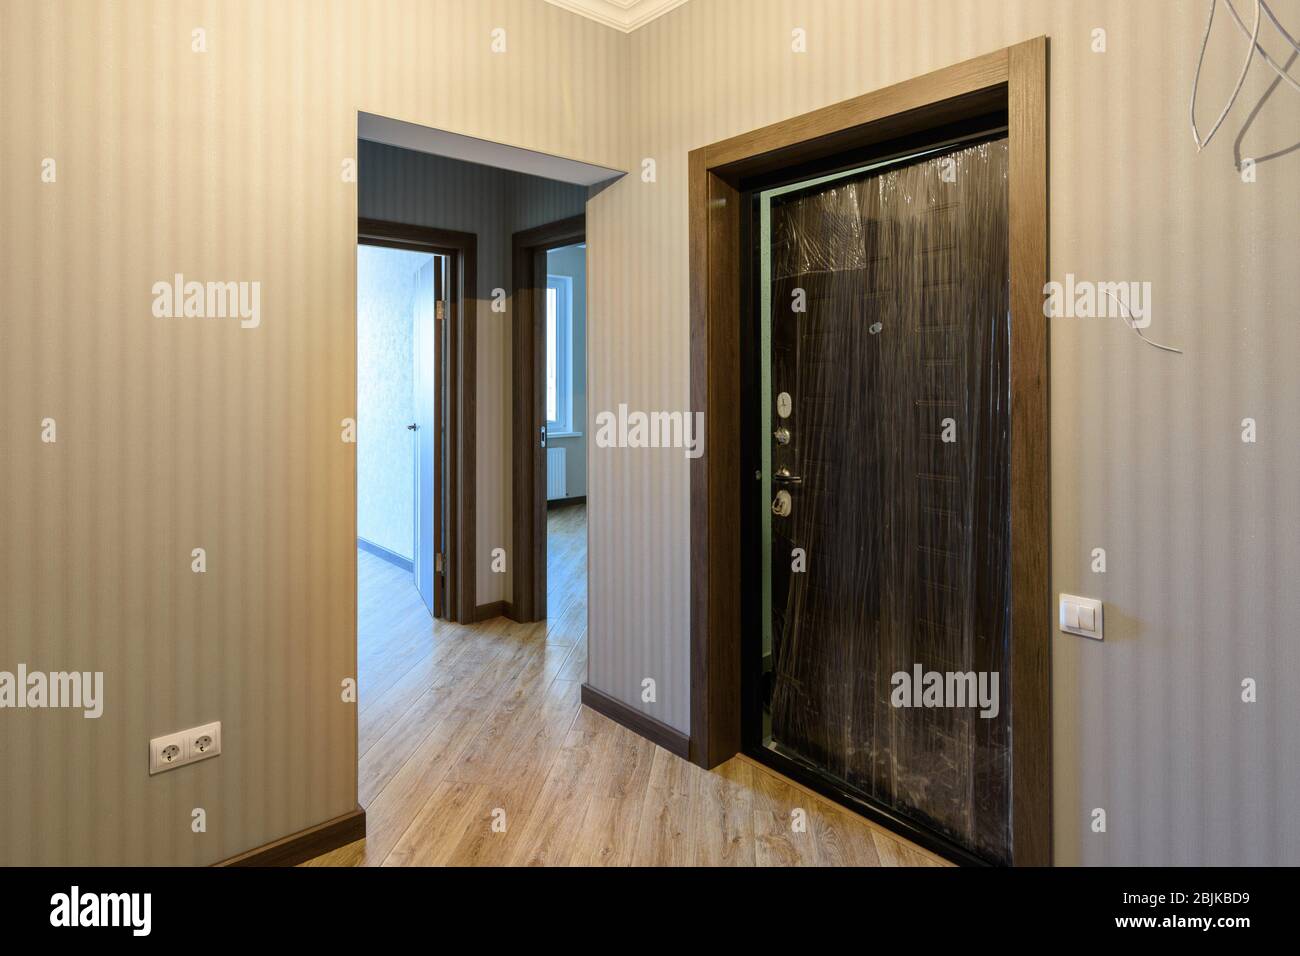 Walnut Interior Doors Stock Photo - Download Image Now - Door, Walnut,  Apartment - iStock